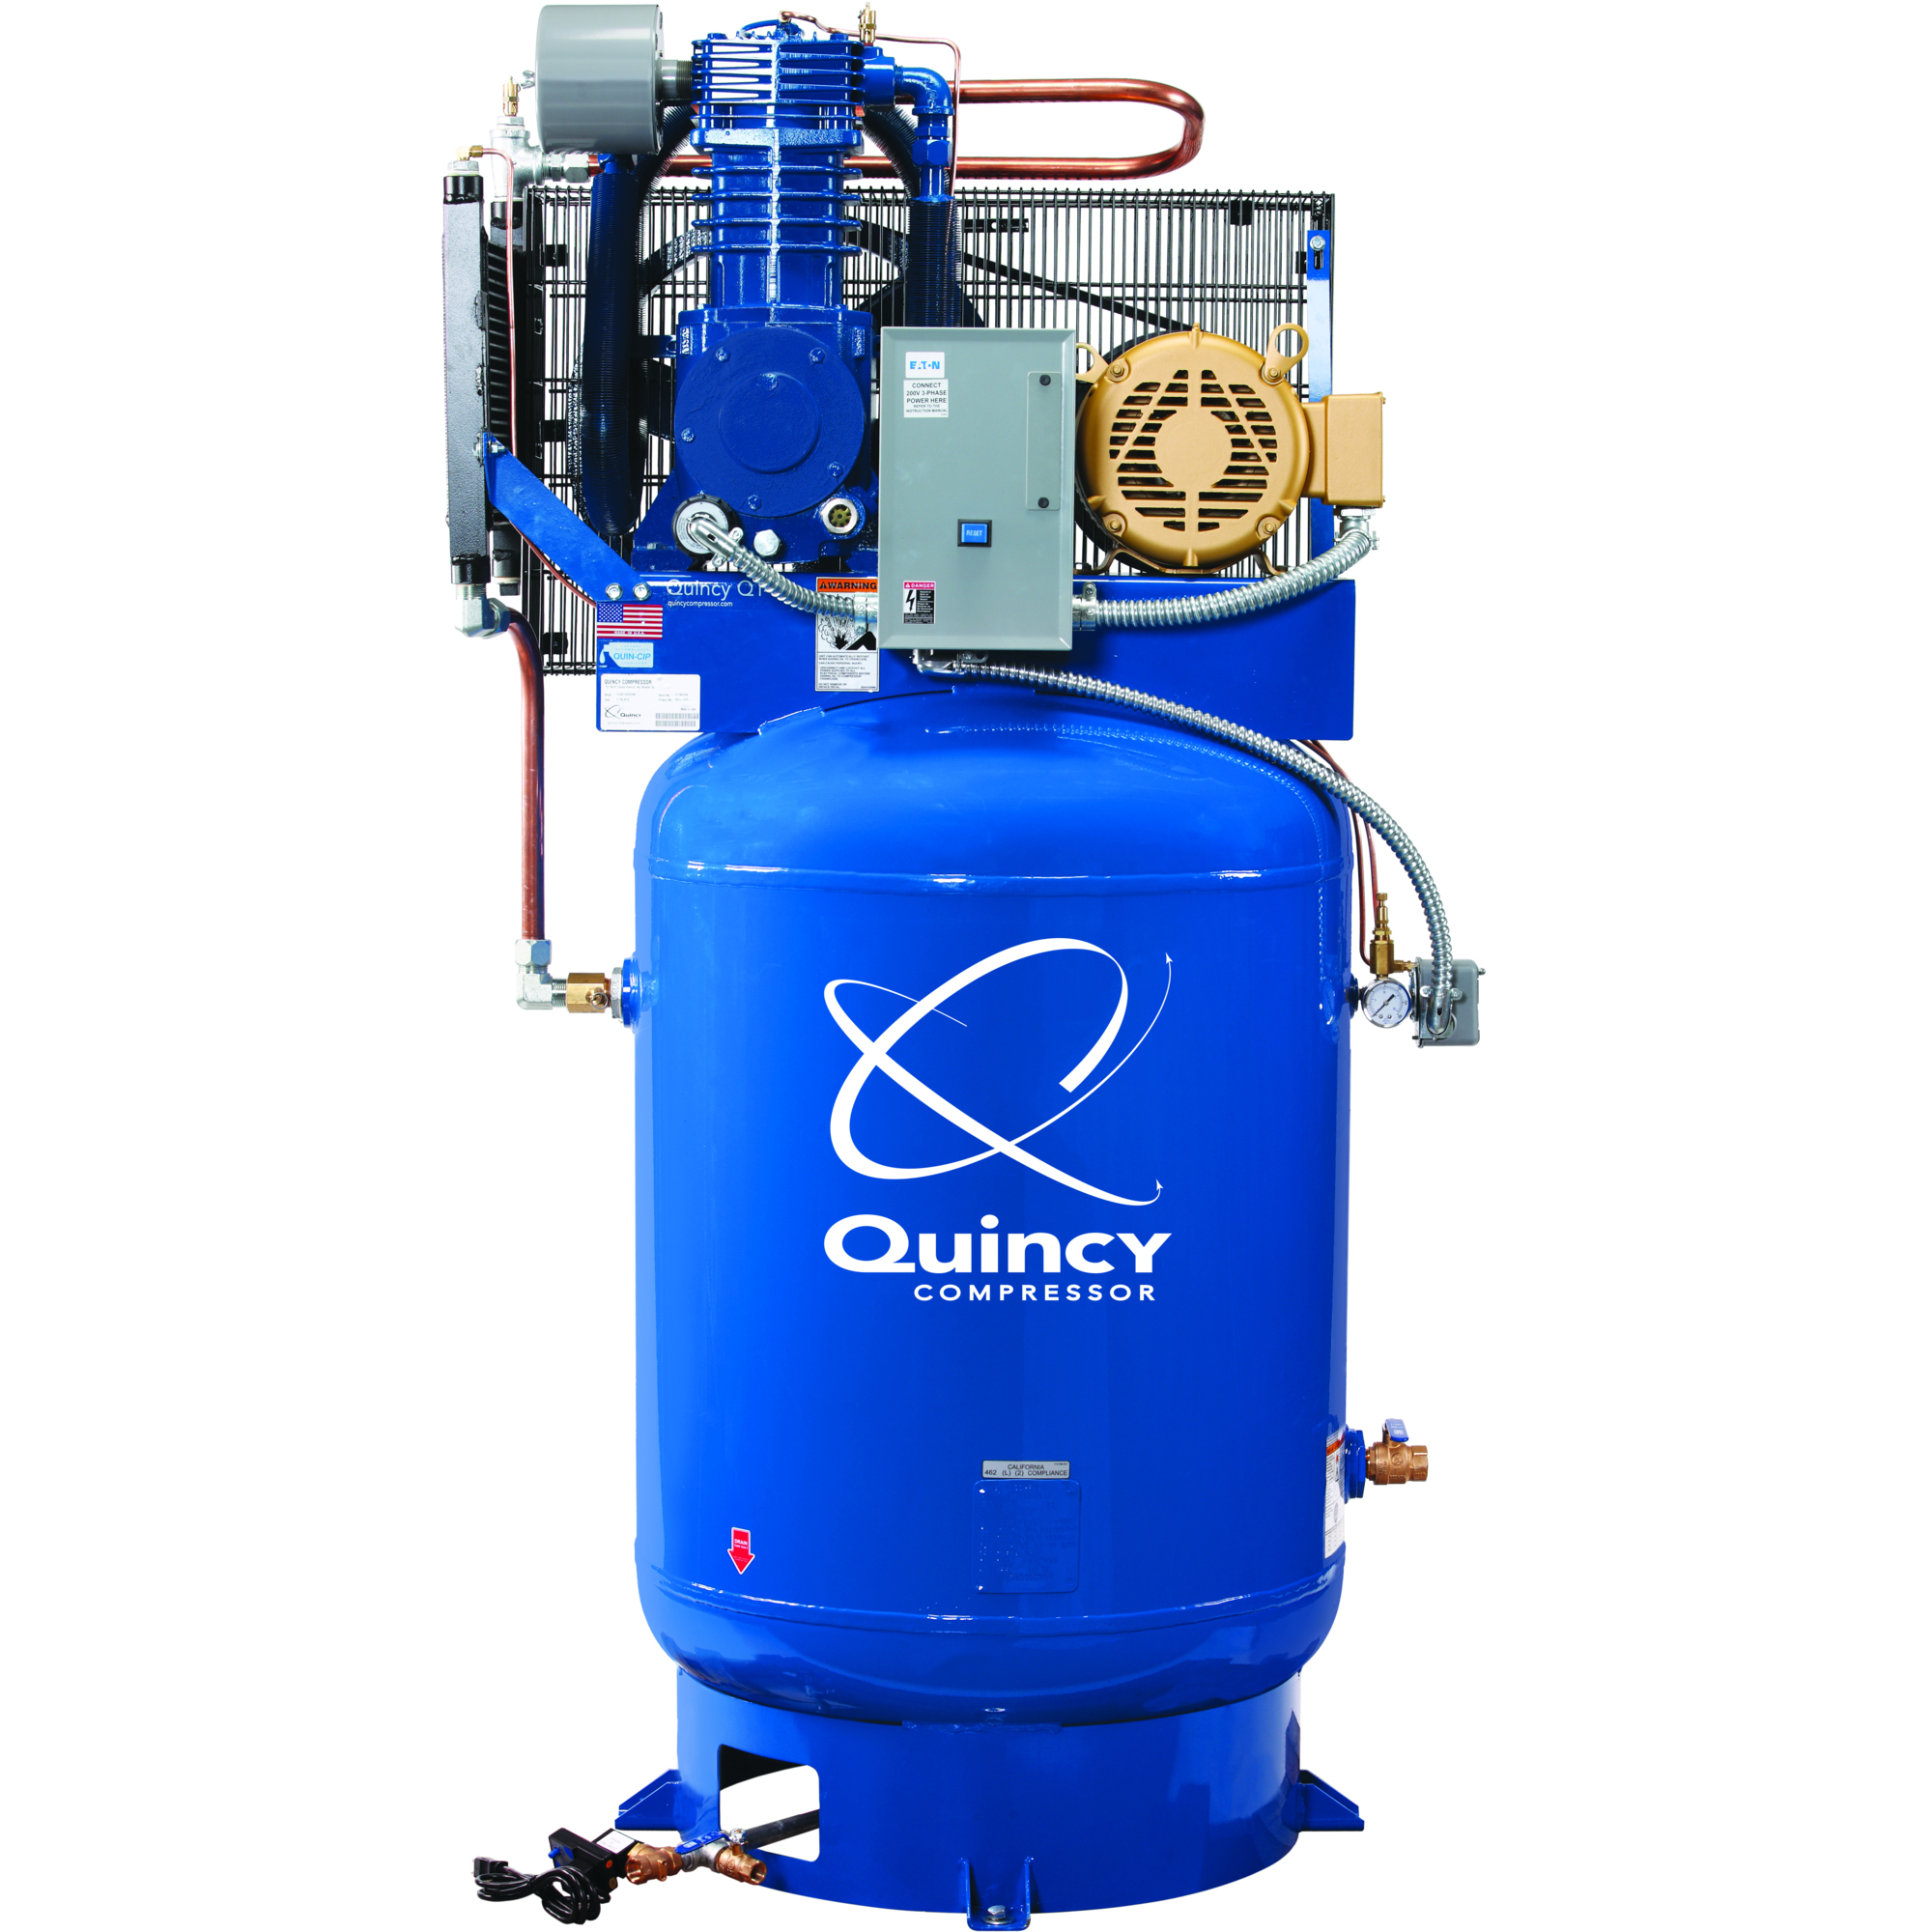 Quincy Compressor 2020040784